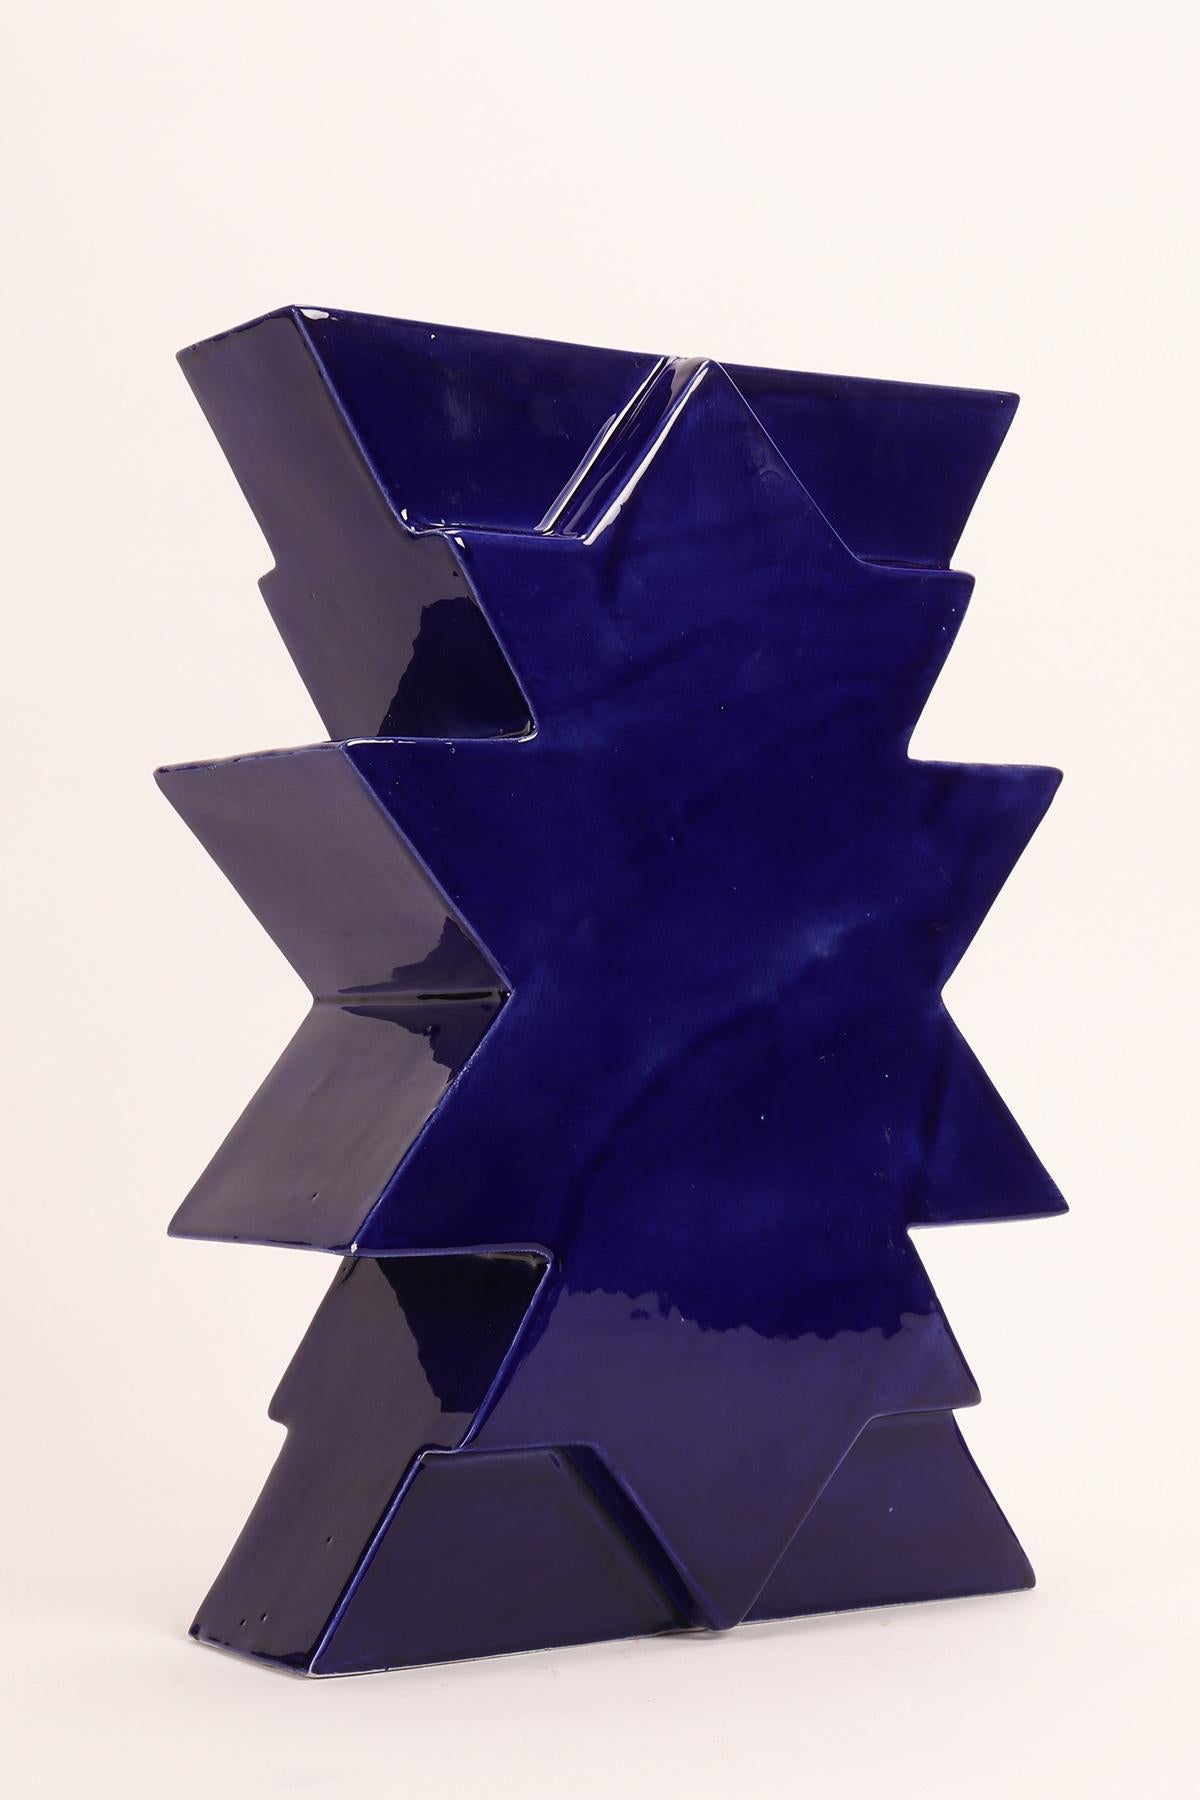 Bemalte Keramikvase Memphis Milano, Ilios von Luciano Florio Paccagnella, Farbe blau.
Er war ein wichtiges Mitglied der Gruppe, als er seine Serie von einzigartigen handgefertigten Vasen schuf. Florio Paccagnella studierte Werbegrafik am Liceo